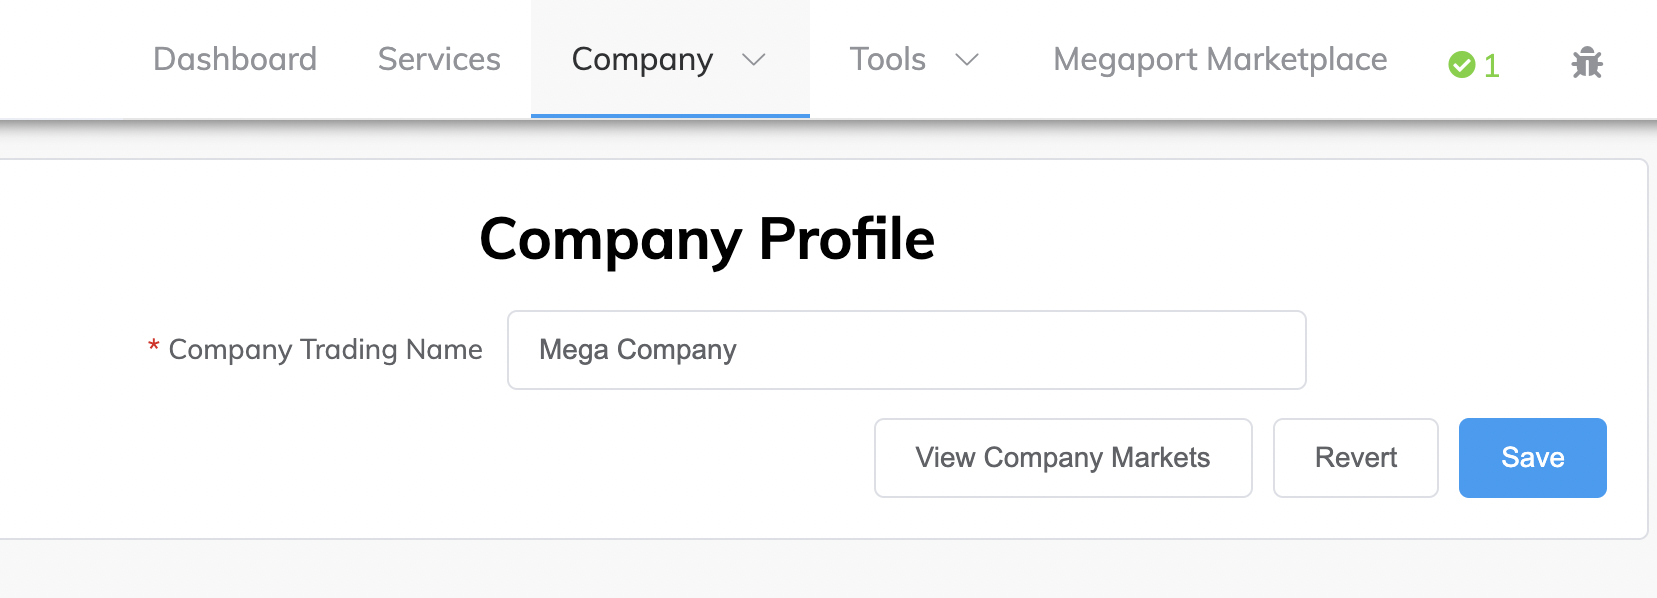 Company Profile page